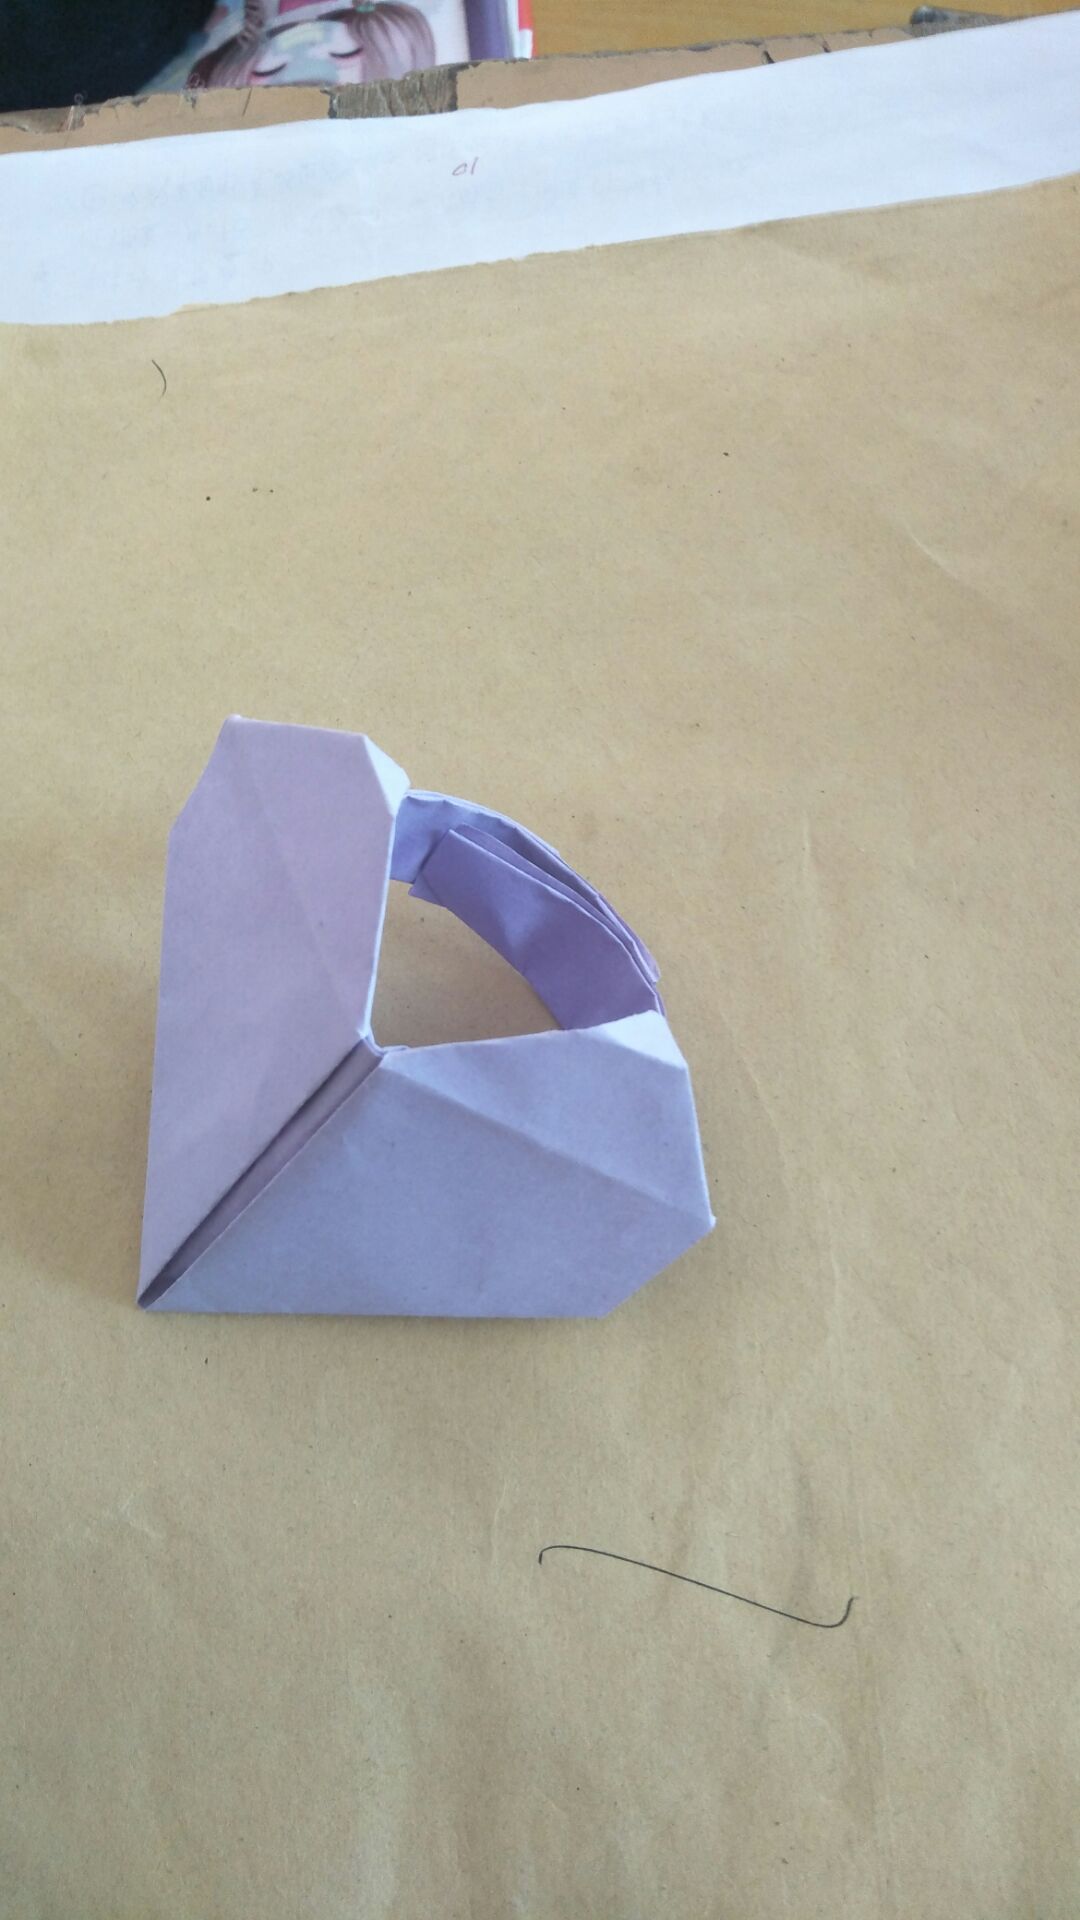 启蒙画室13137786759，赵旭慧老师用一张正方形纸完成的图文教程，心形戒指，分享给大家